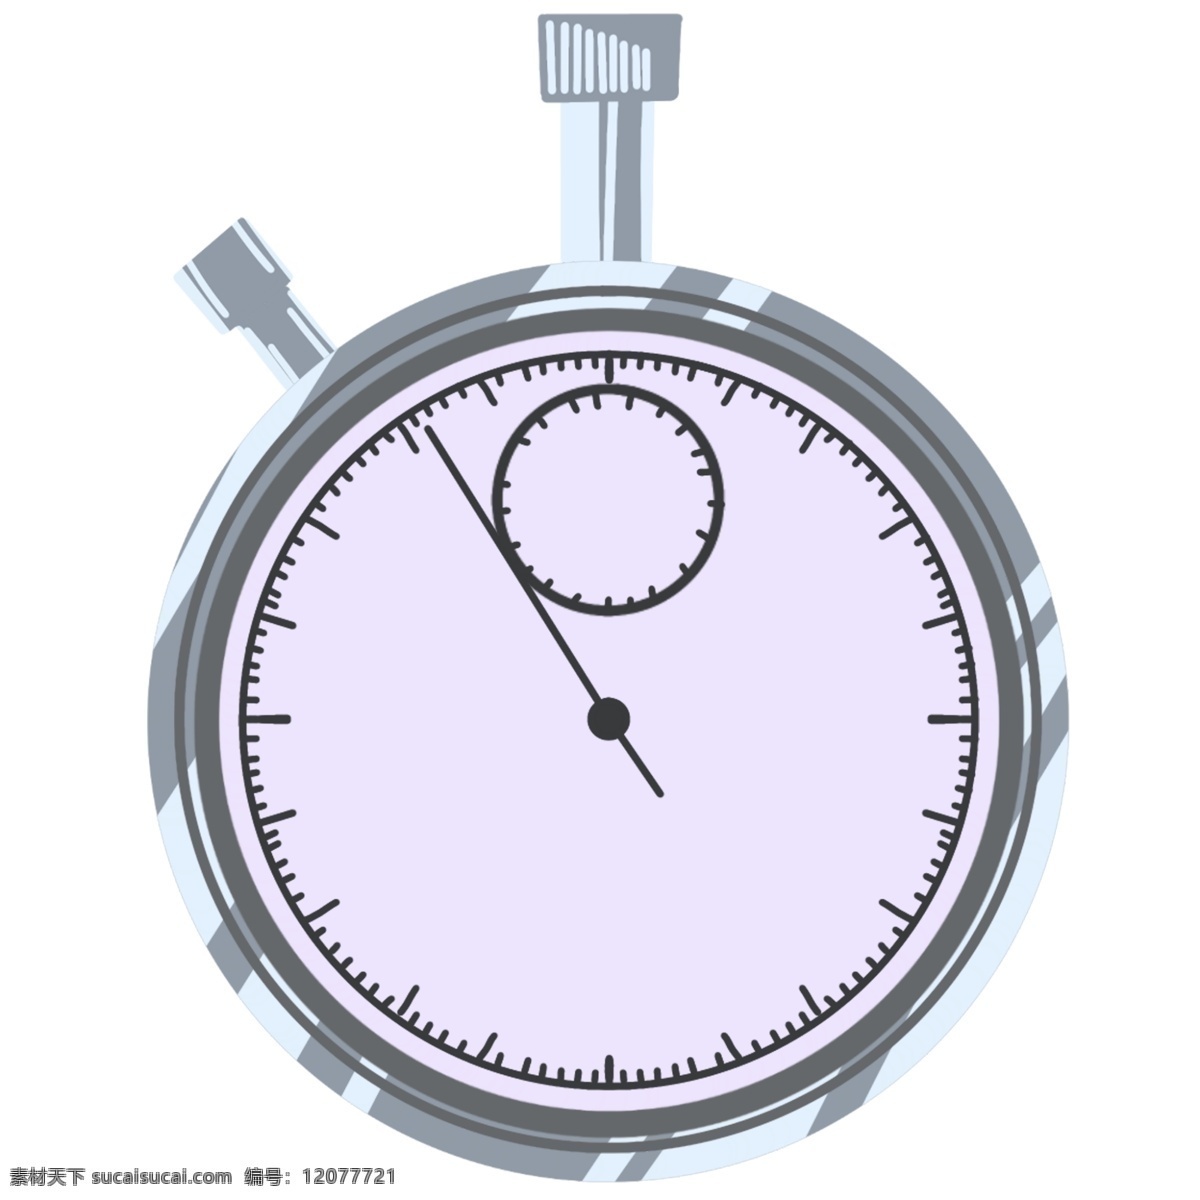 比赛 秒表 装饰 插画 灰色的秒表 比赛秒表 漂亮的秒表 创意秒表 立体秒表 卡通秒表 秒表装饰 秒表插画